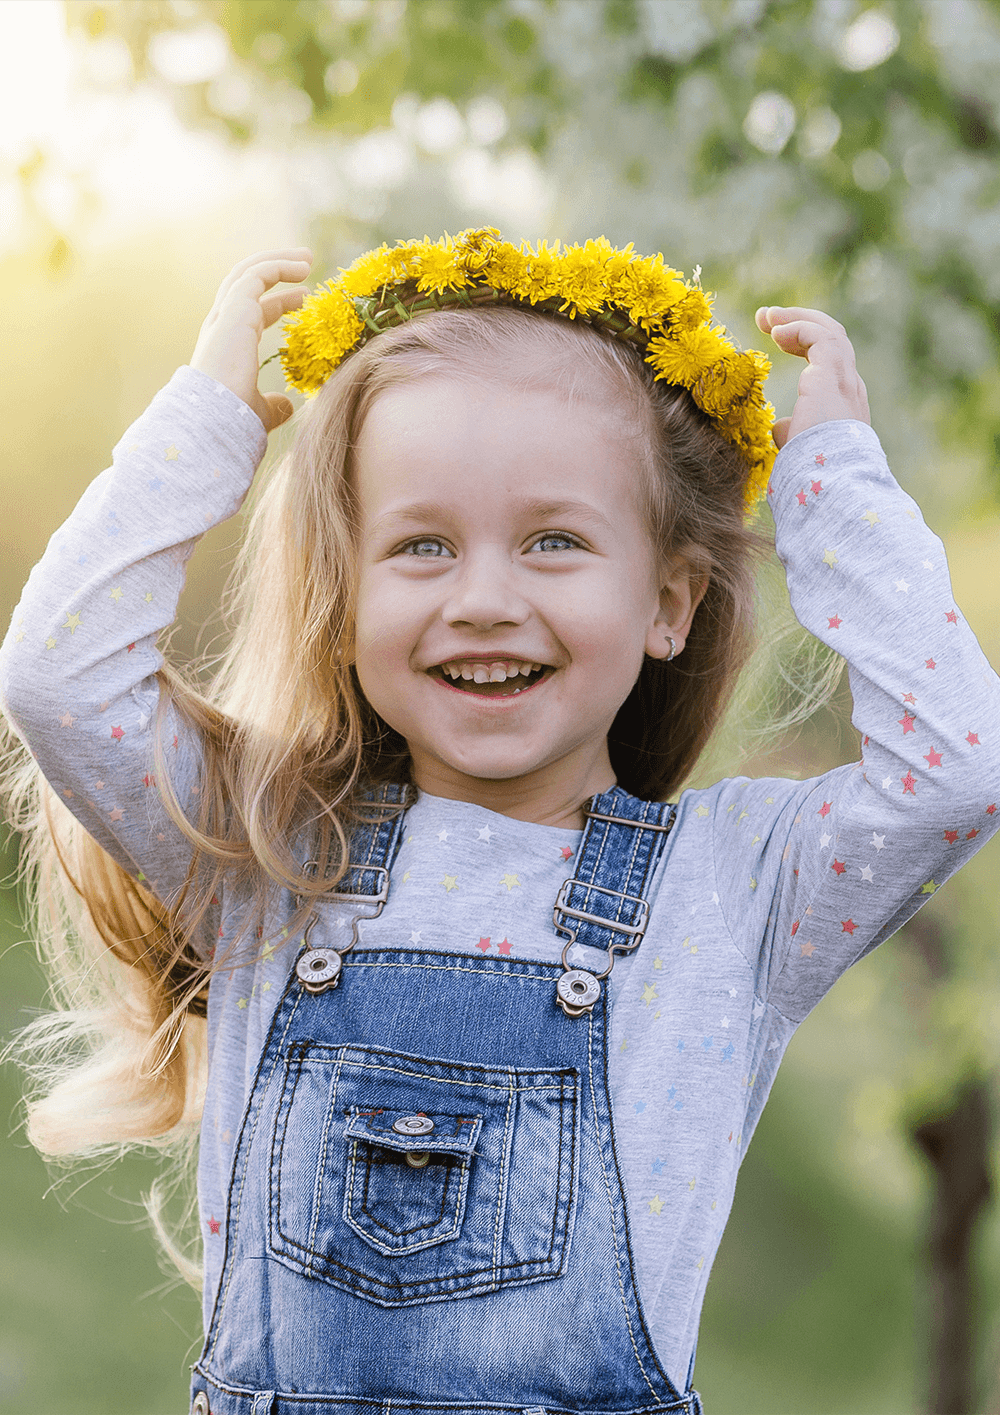 Radosna przedszkolna dziewczynka zakłada na głowę kolorowy wianek z kwiatów.